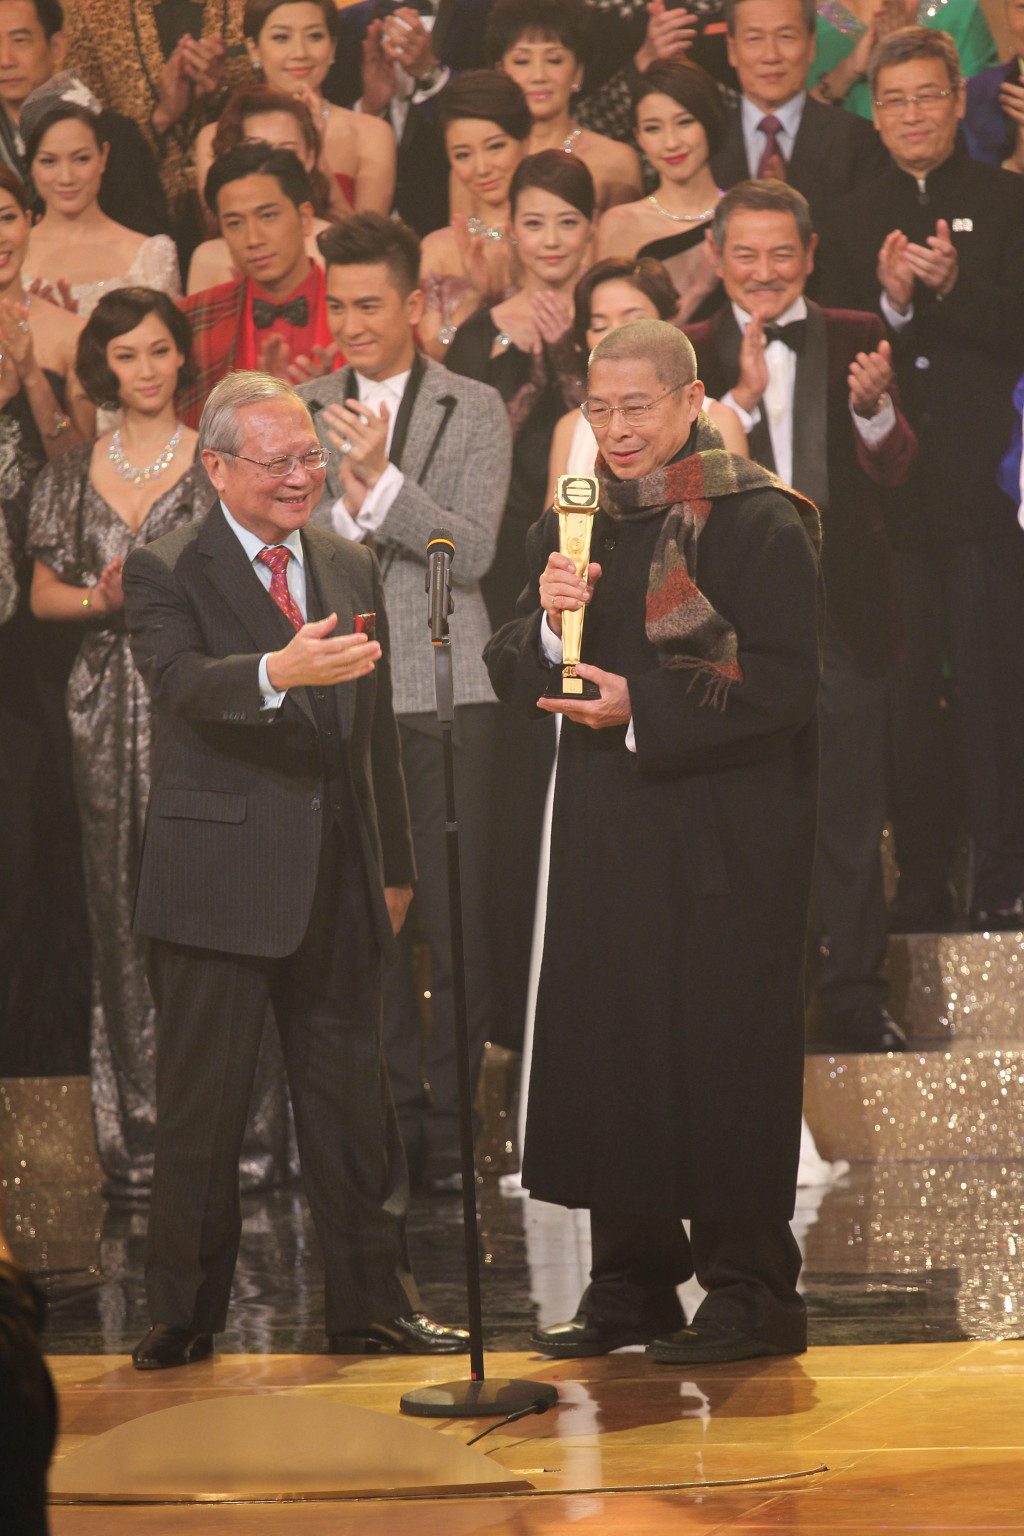 劉兆銘在《萬千星輝頒獎典禮2013》獲頒萬千光輝演藝人大獎。